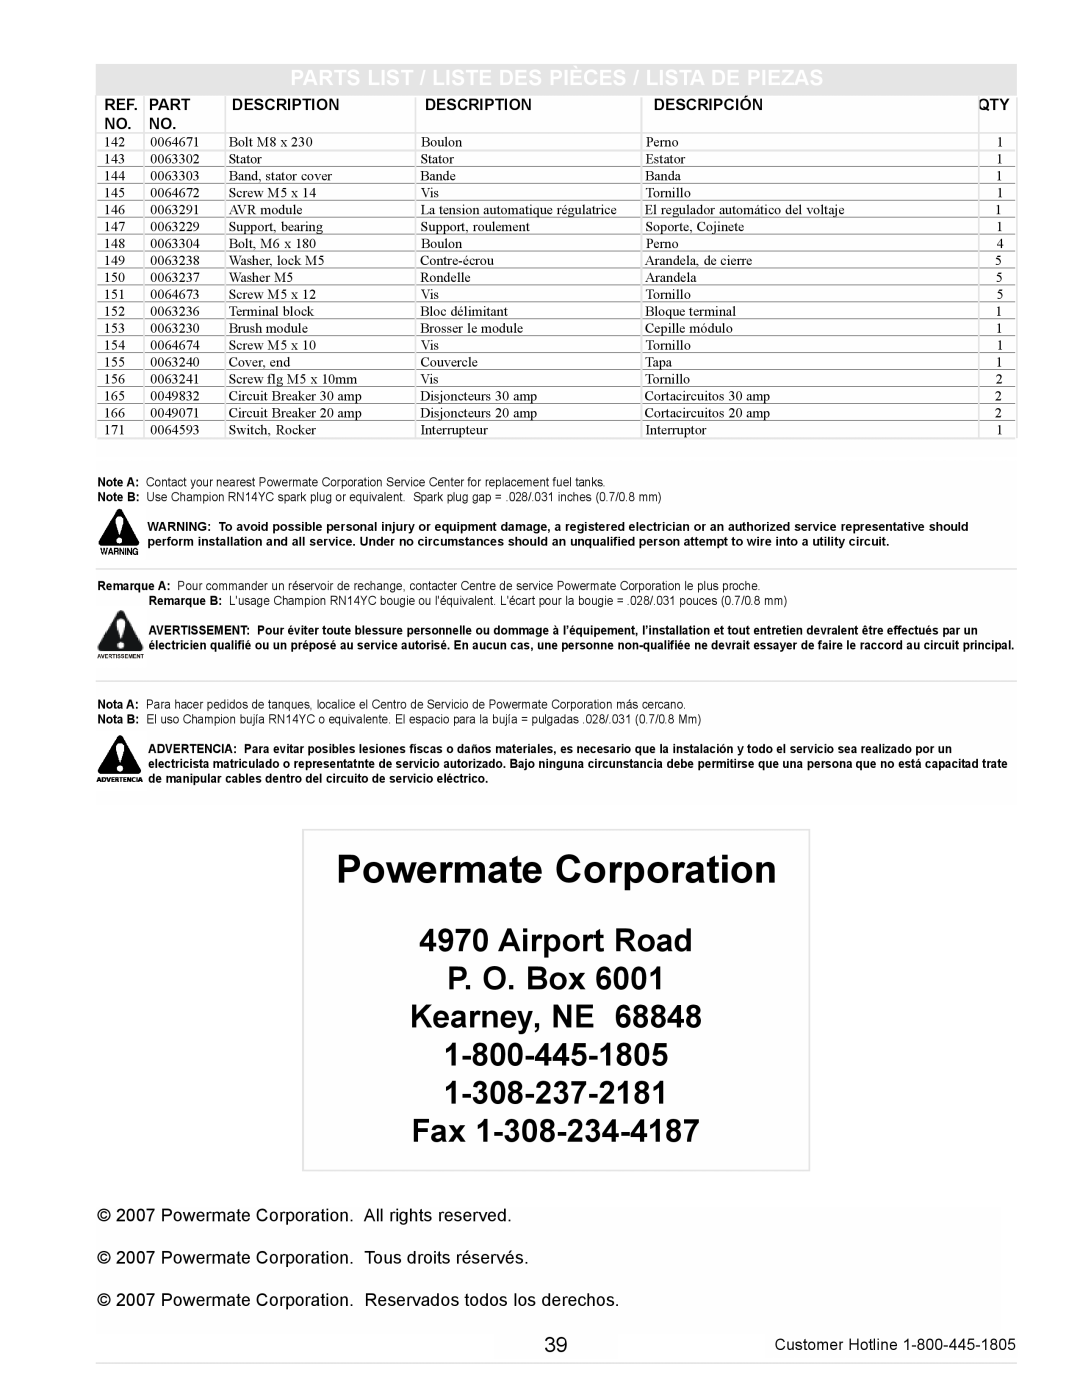 Powermate PM0105000 manual Airport Road P. O. Box Kearney, NE, Powermate Corporation 